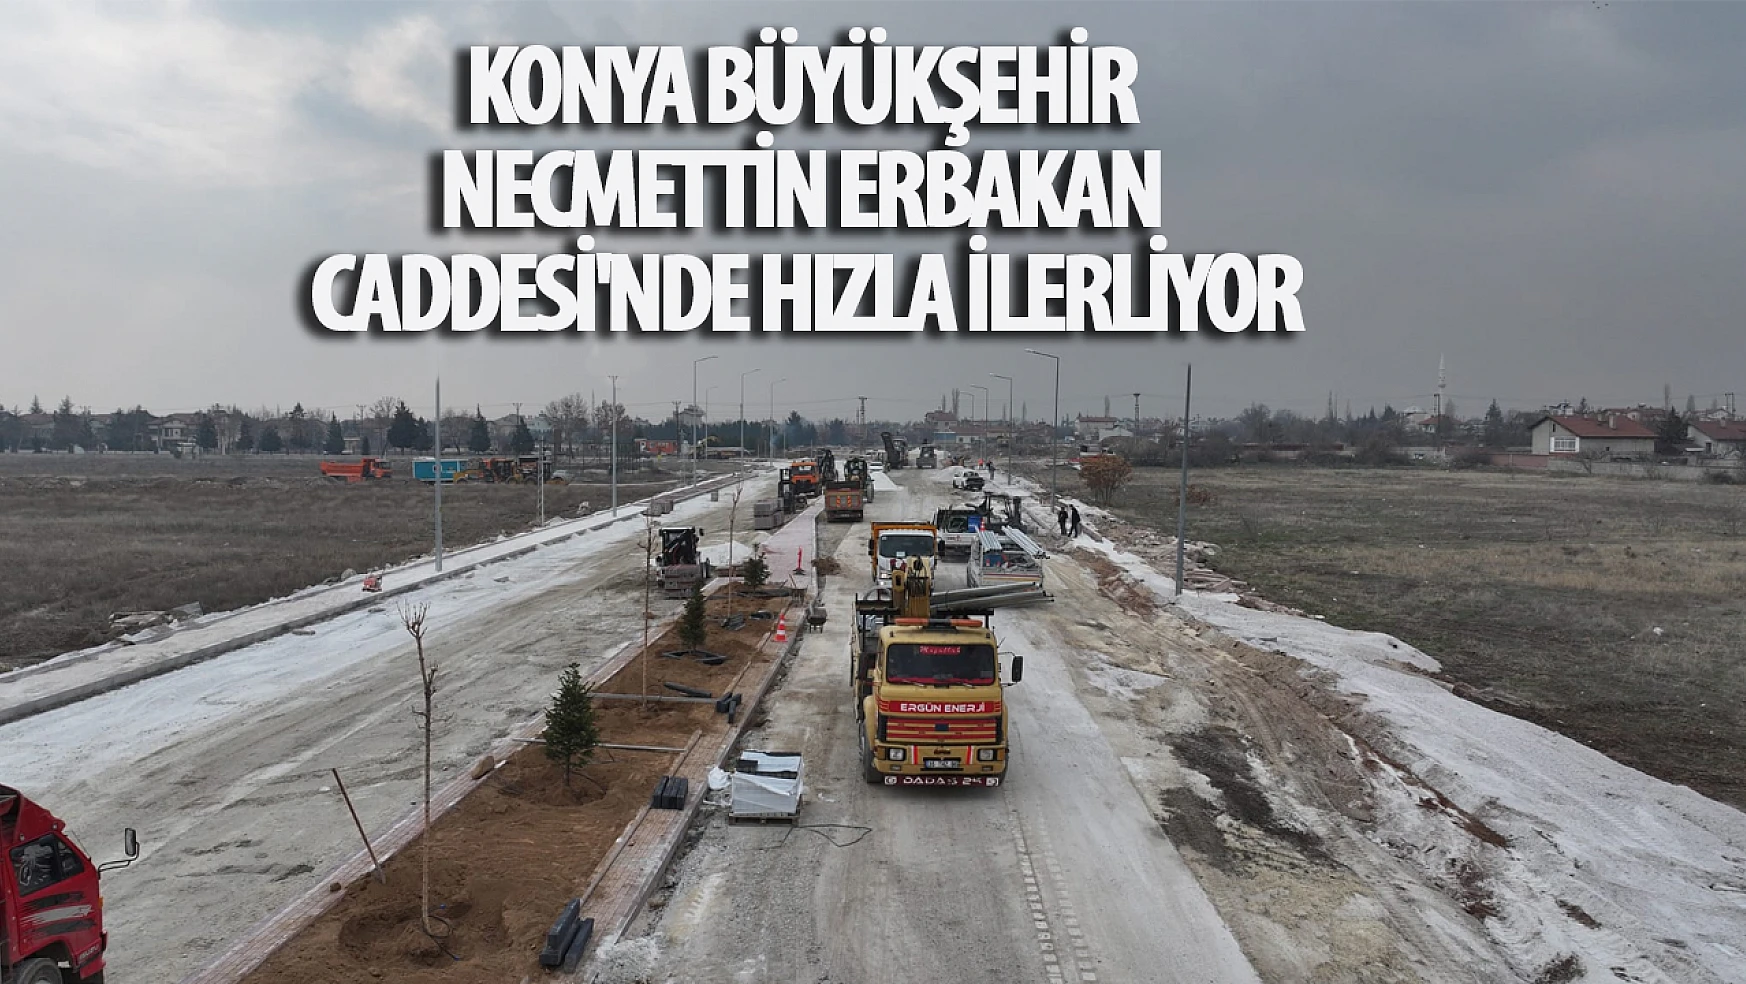 Konya Büyükşehir Necmettin Erbakan Caddesi'nde Hızla İlerliyor